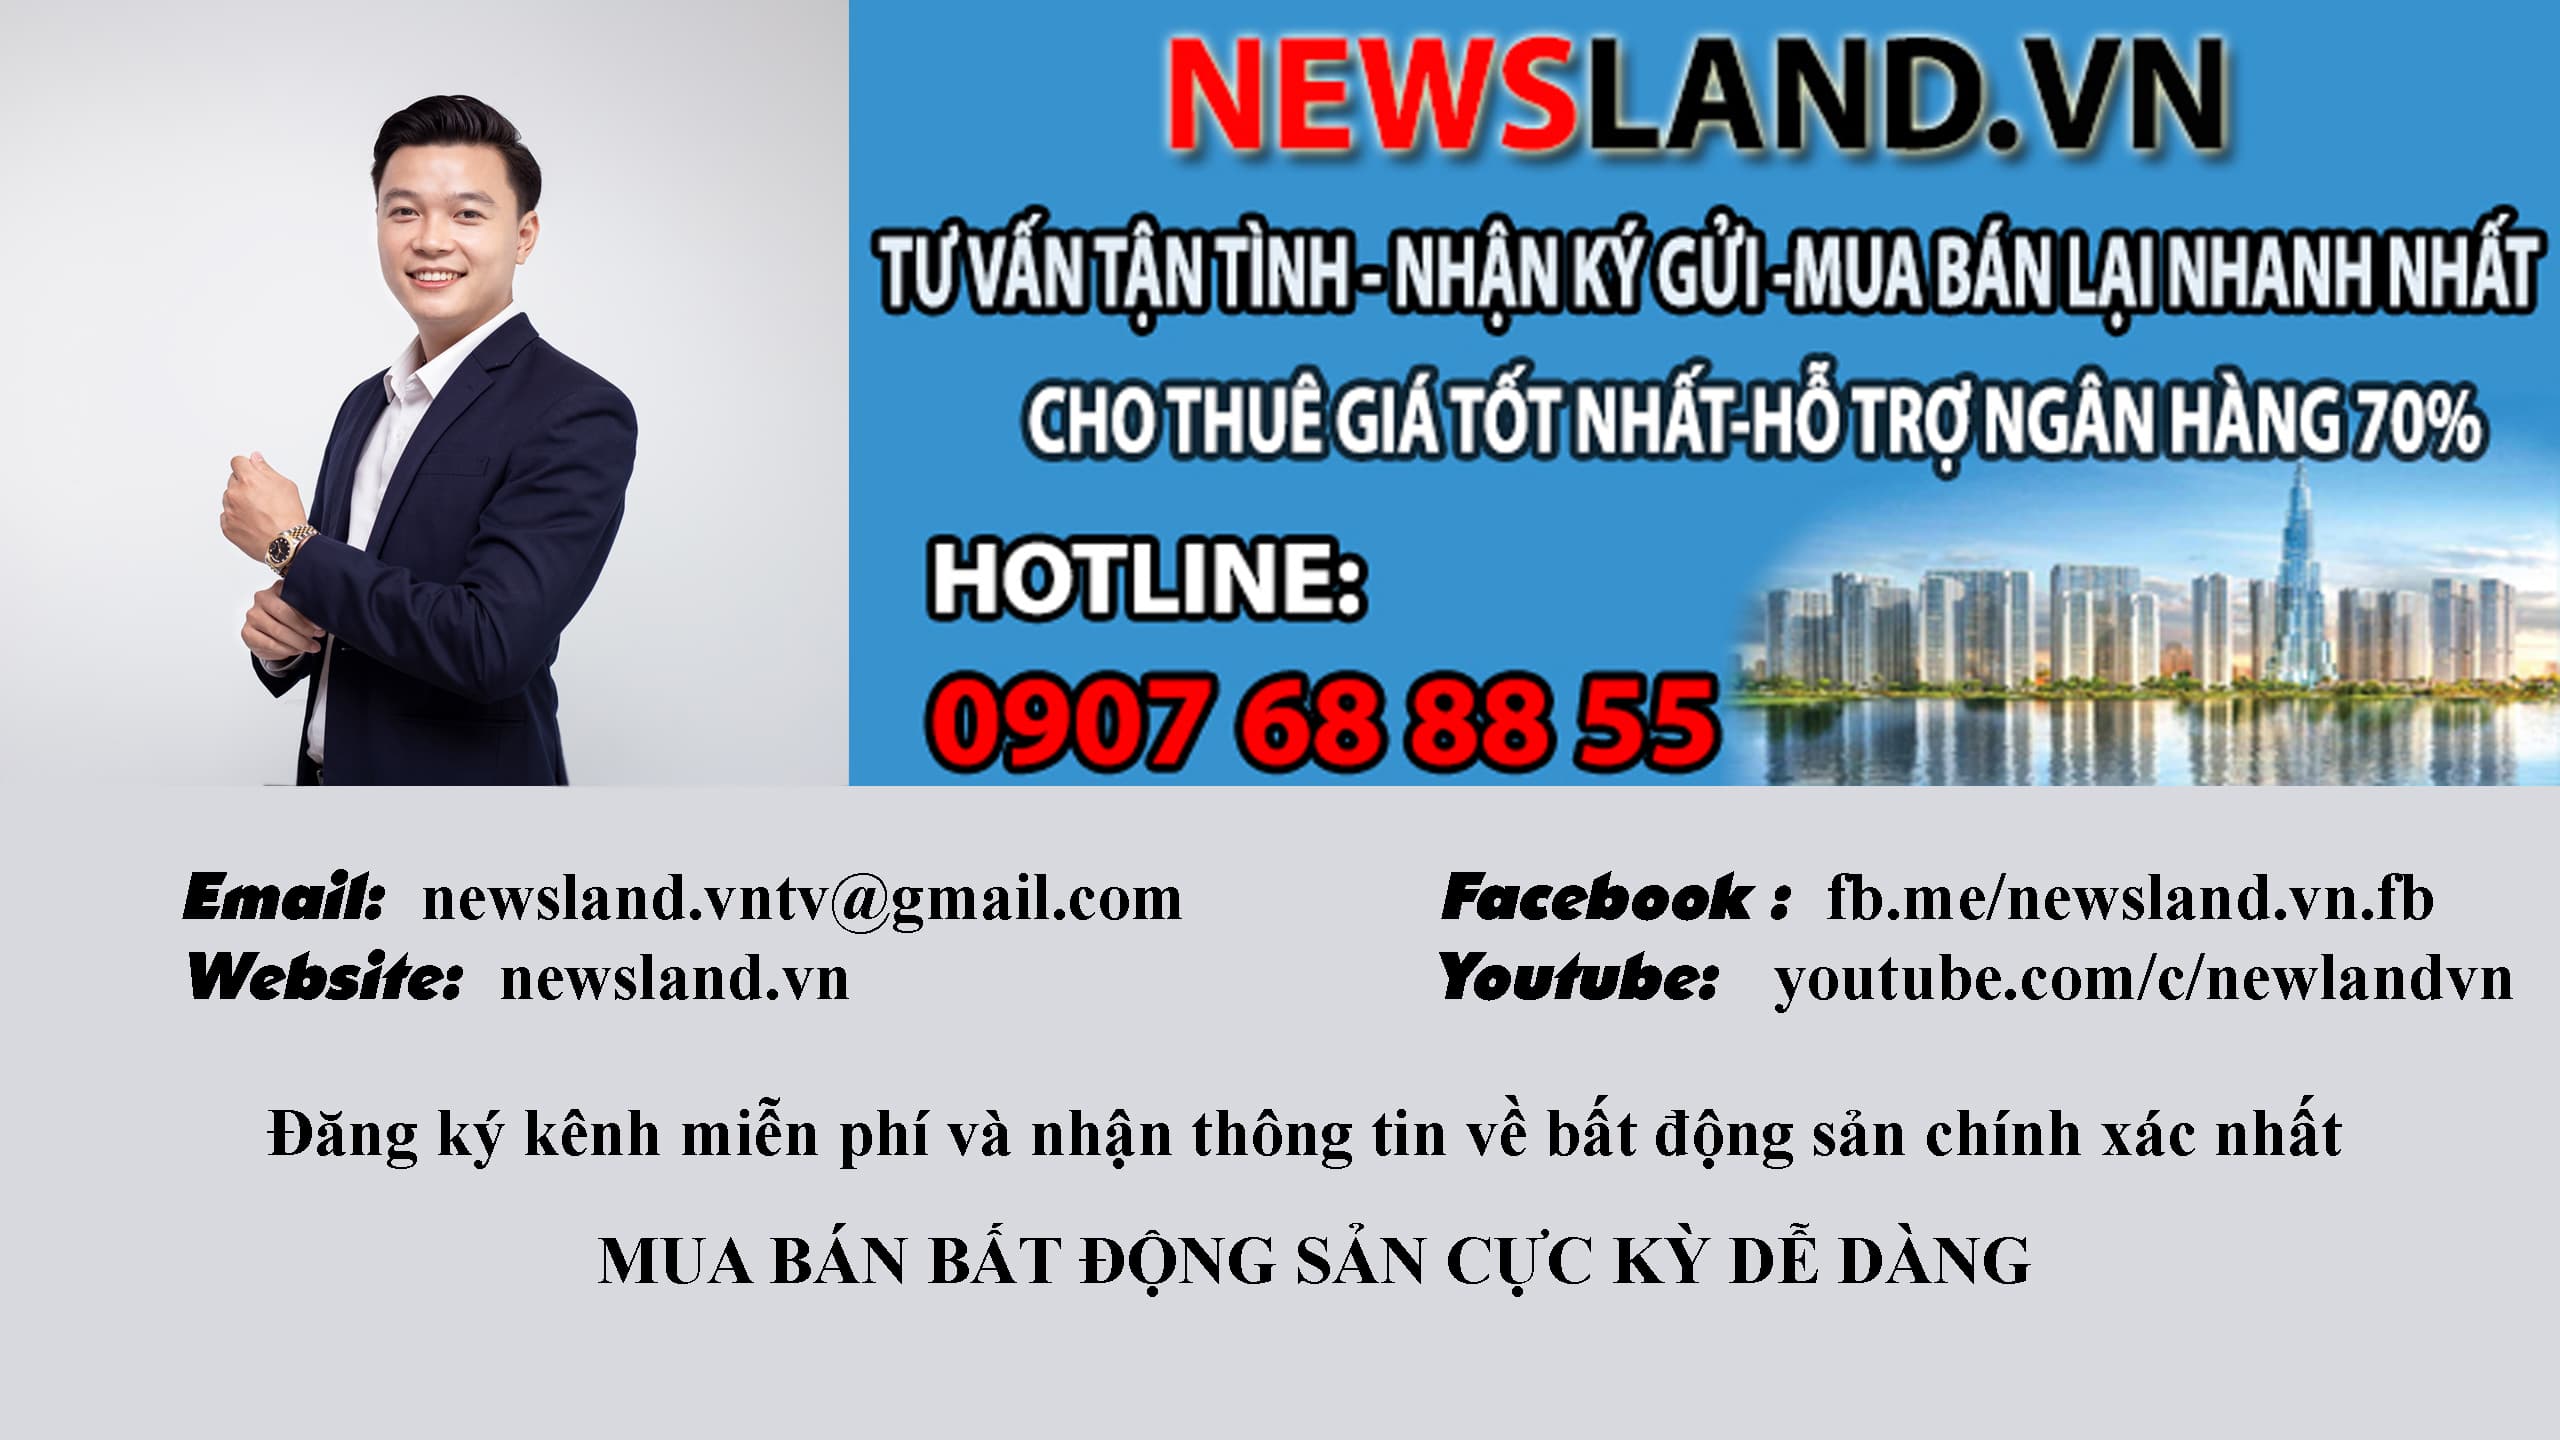 newsland.vn